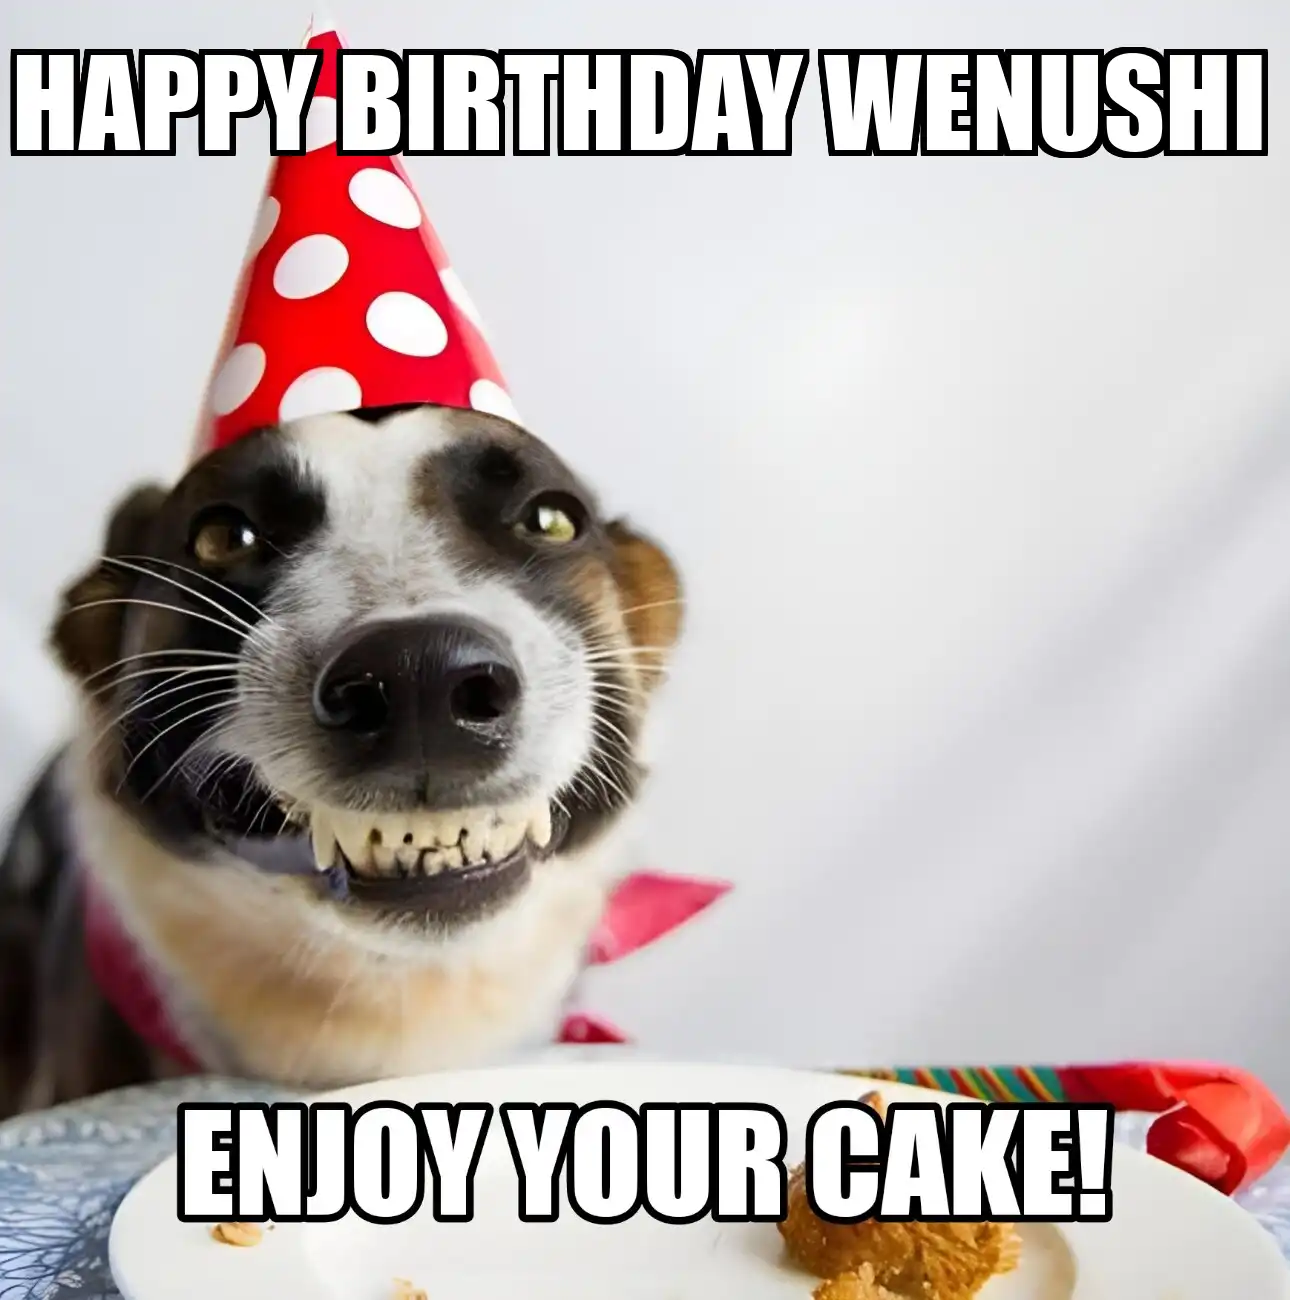 Happy Birthday Wenushi Enjoy Your Cake Dog Meme